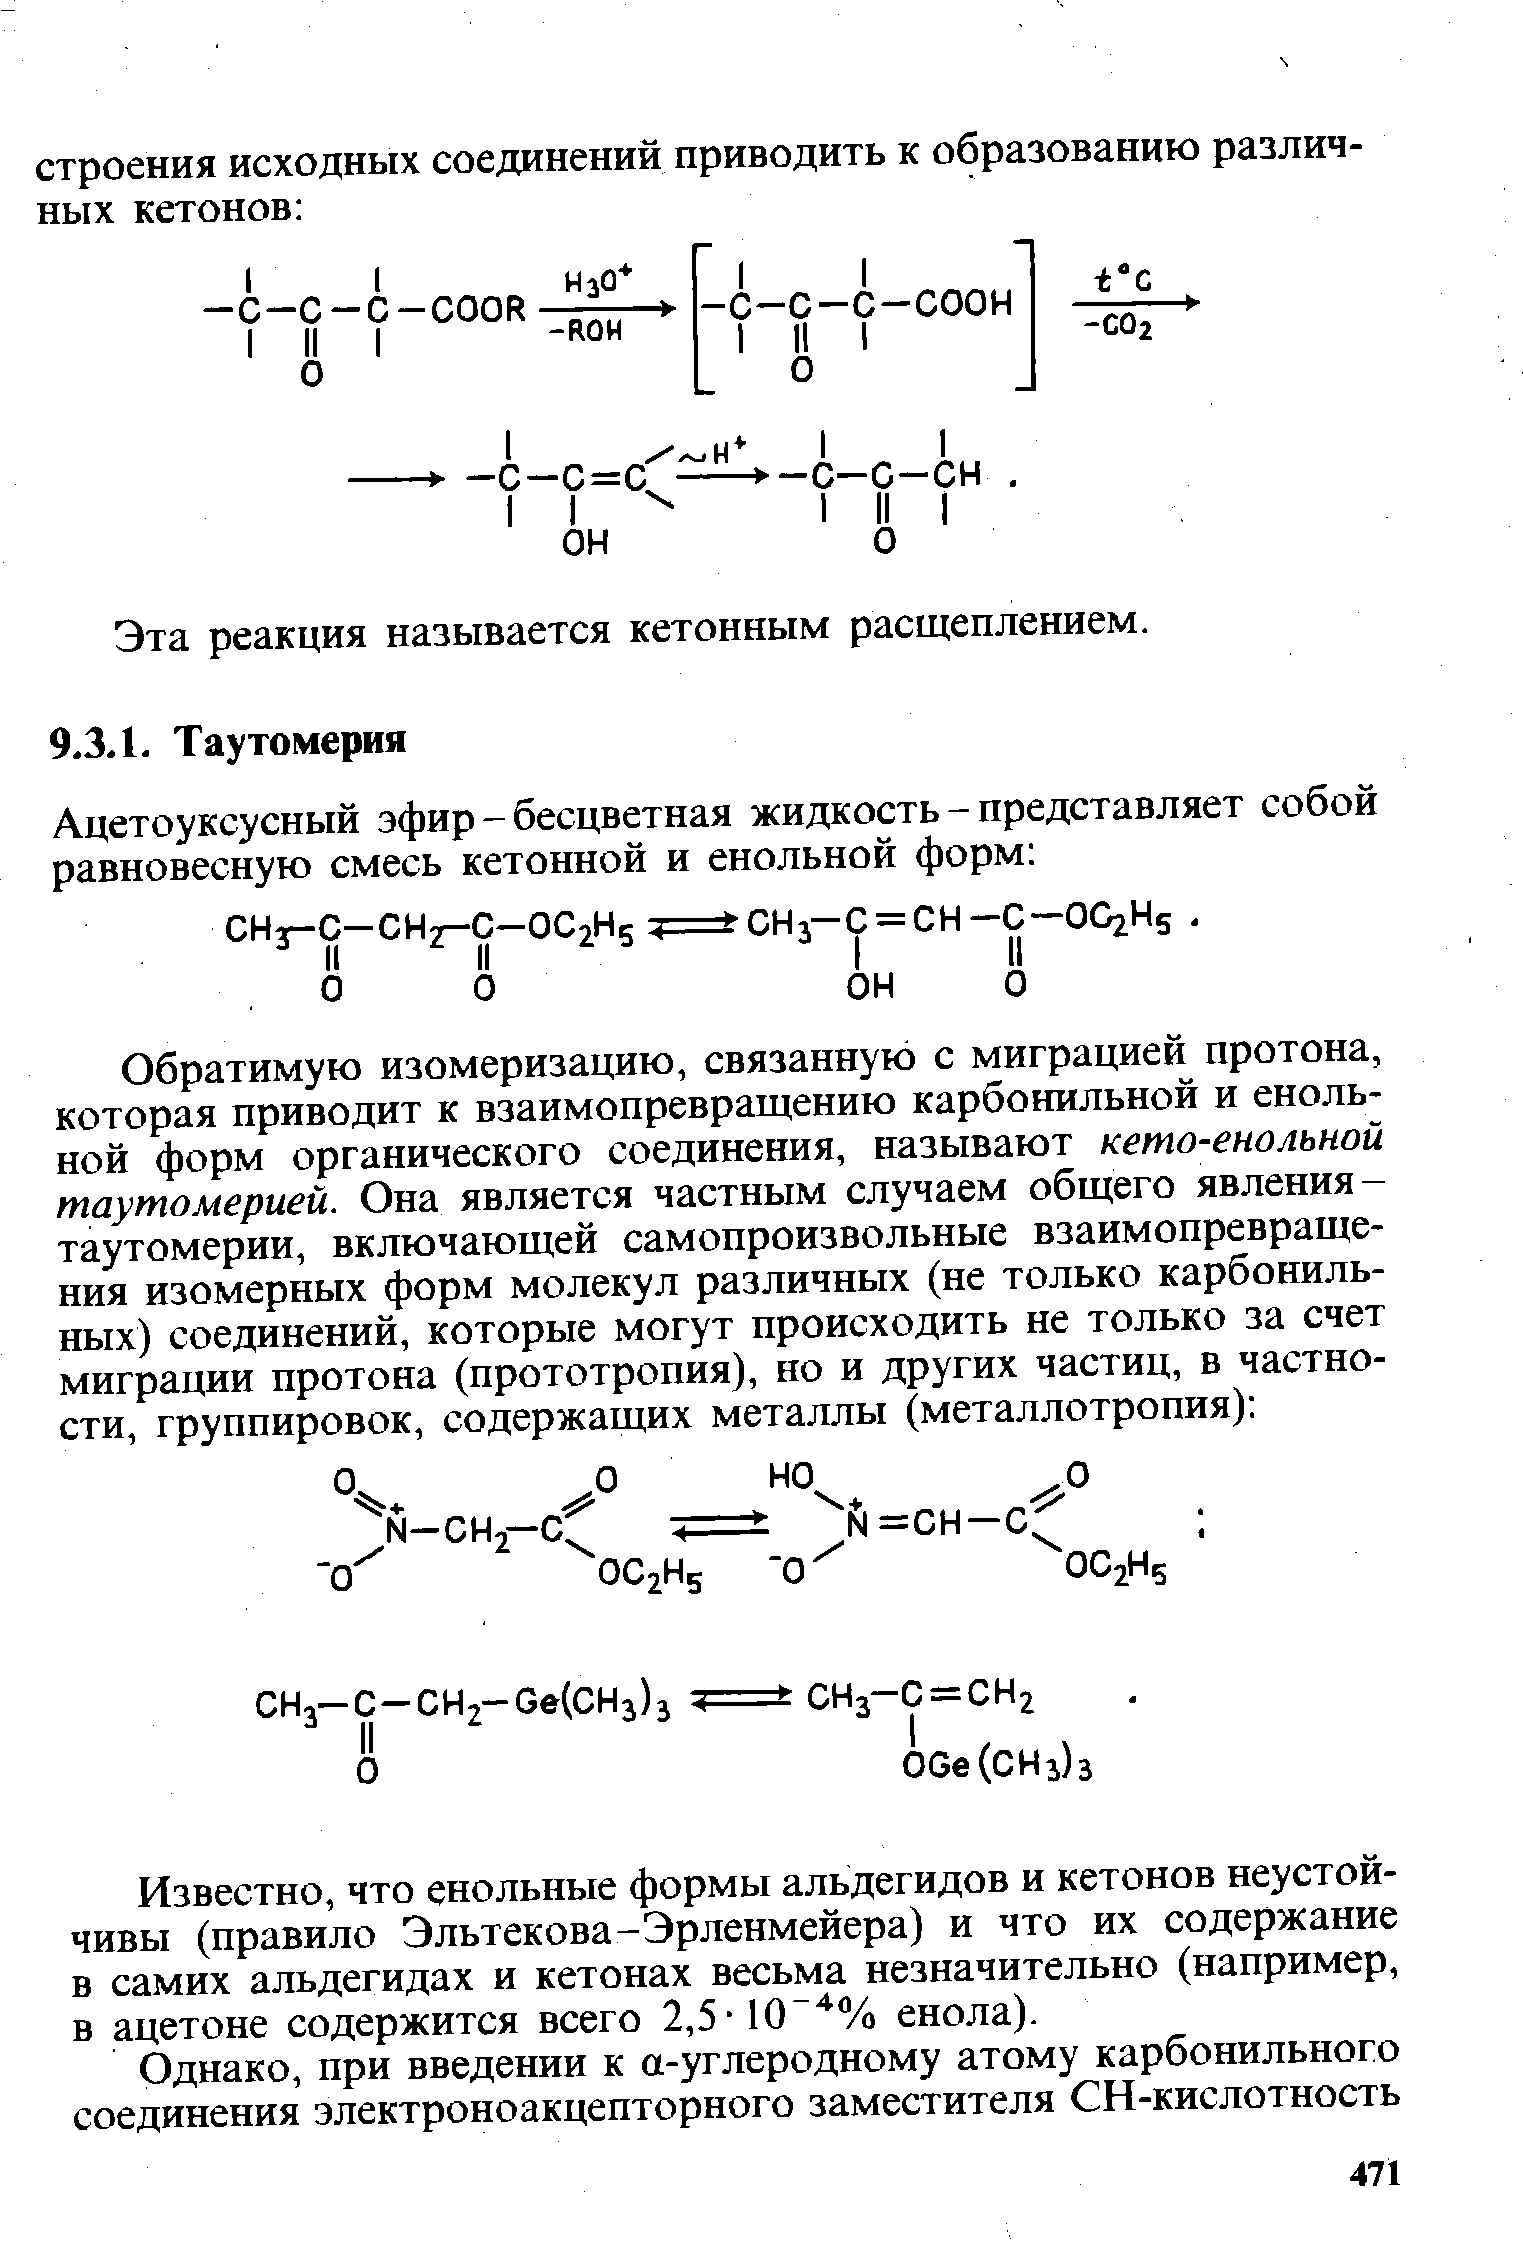 Известно, что енольные формы альдегидов и кетонов неустойчивы (правило Эльтекова-Эрленмейера) и что их содержание в самих альдегидах и кетонах весьма незначительно (например, в ацетоне содержится всего 2,5-10 % енола).